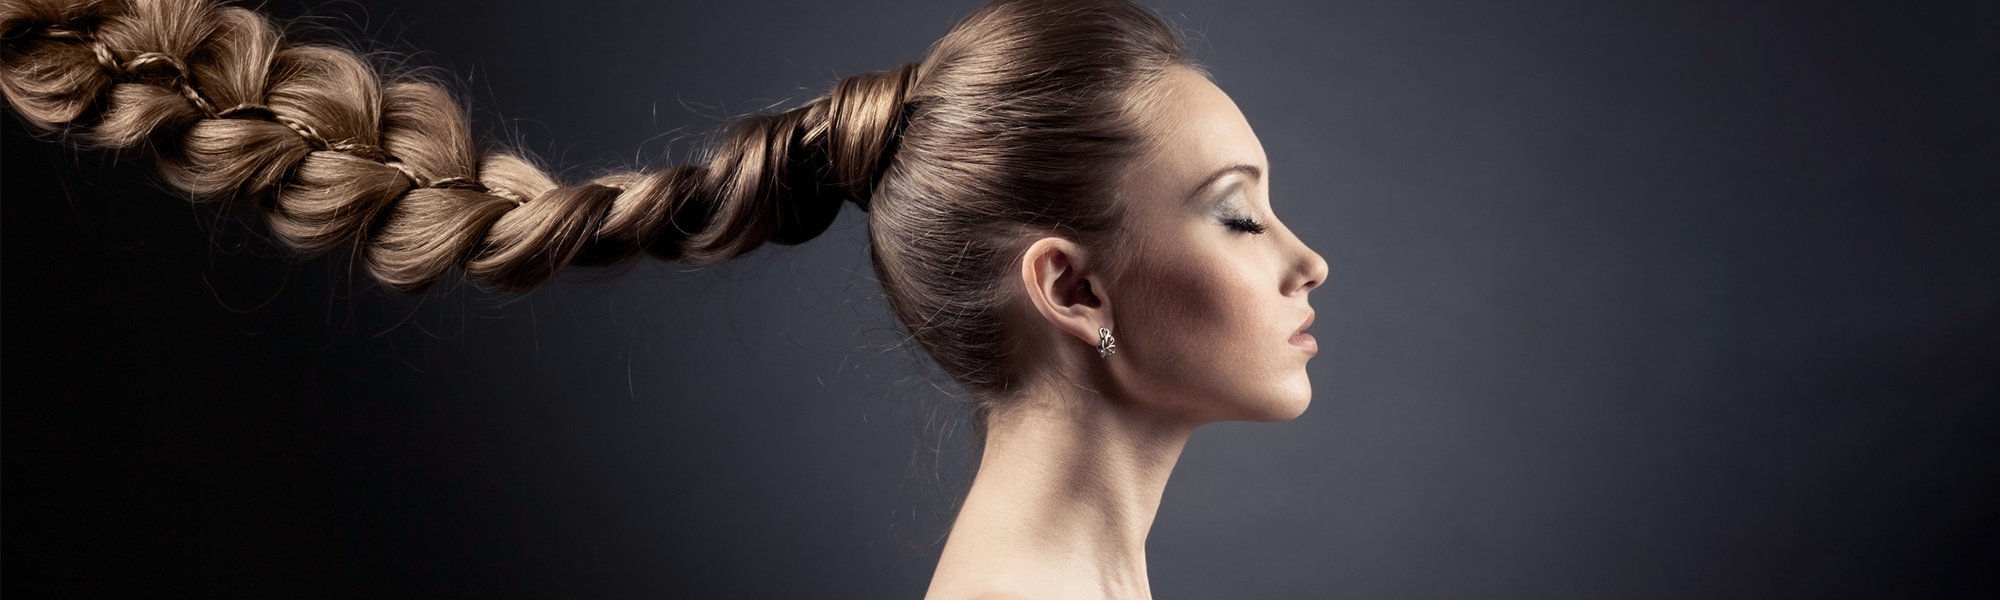 Junge Frau mit langen dunkelblonden geflochtenen Haaren - Profilansicht